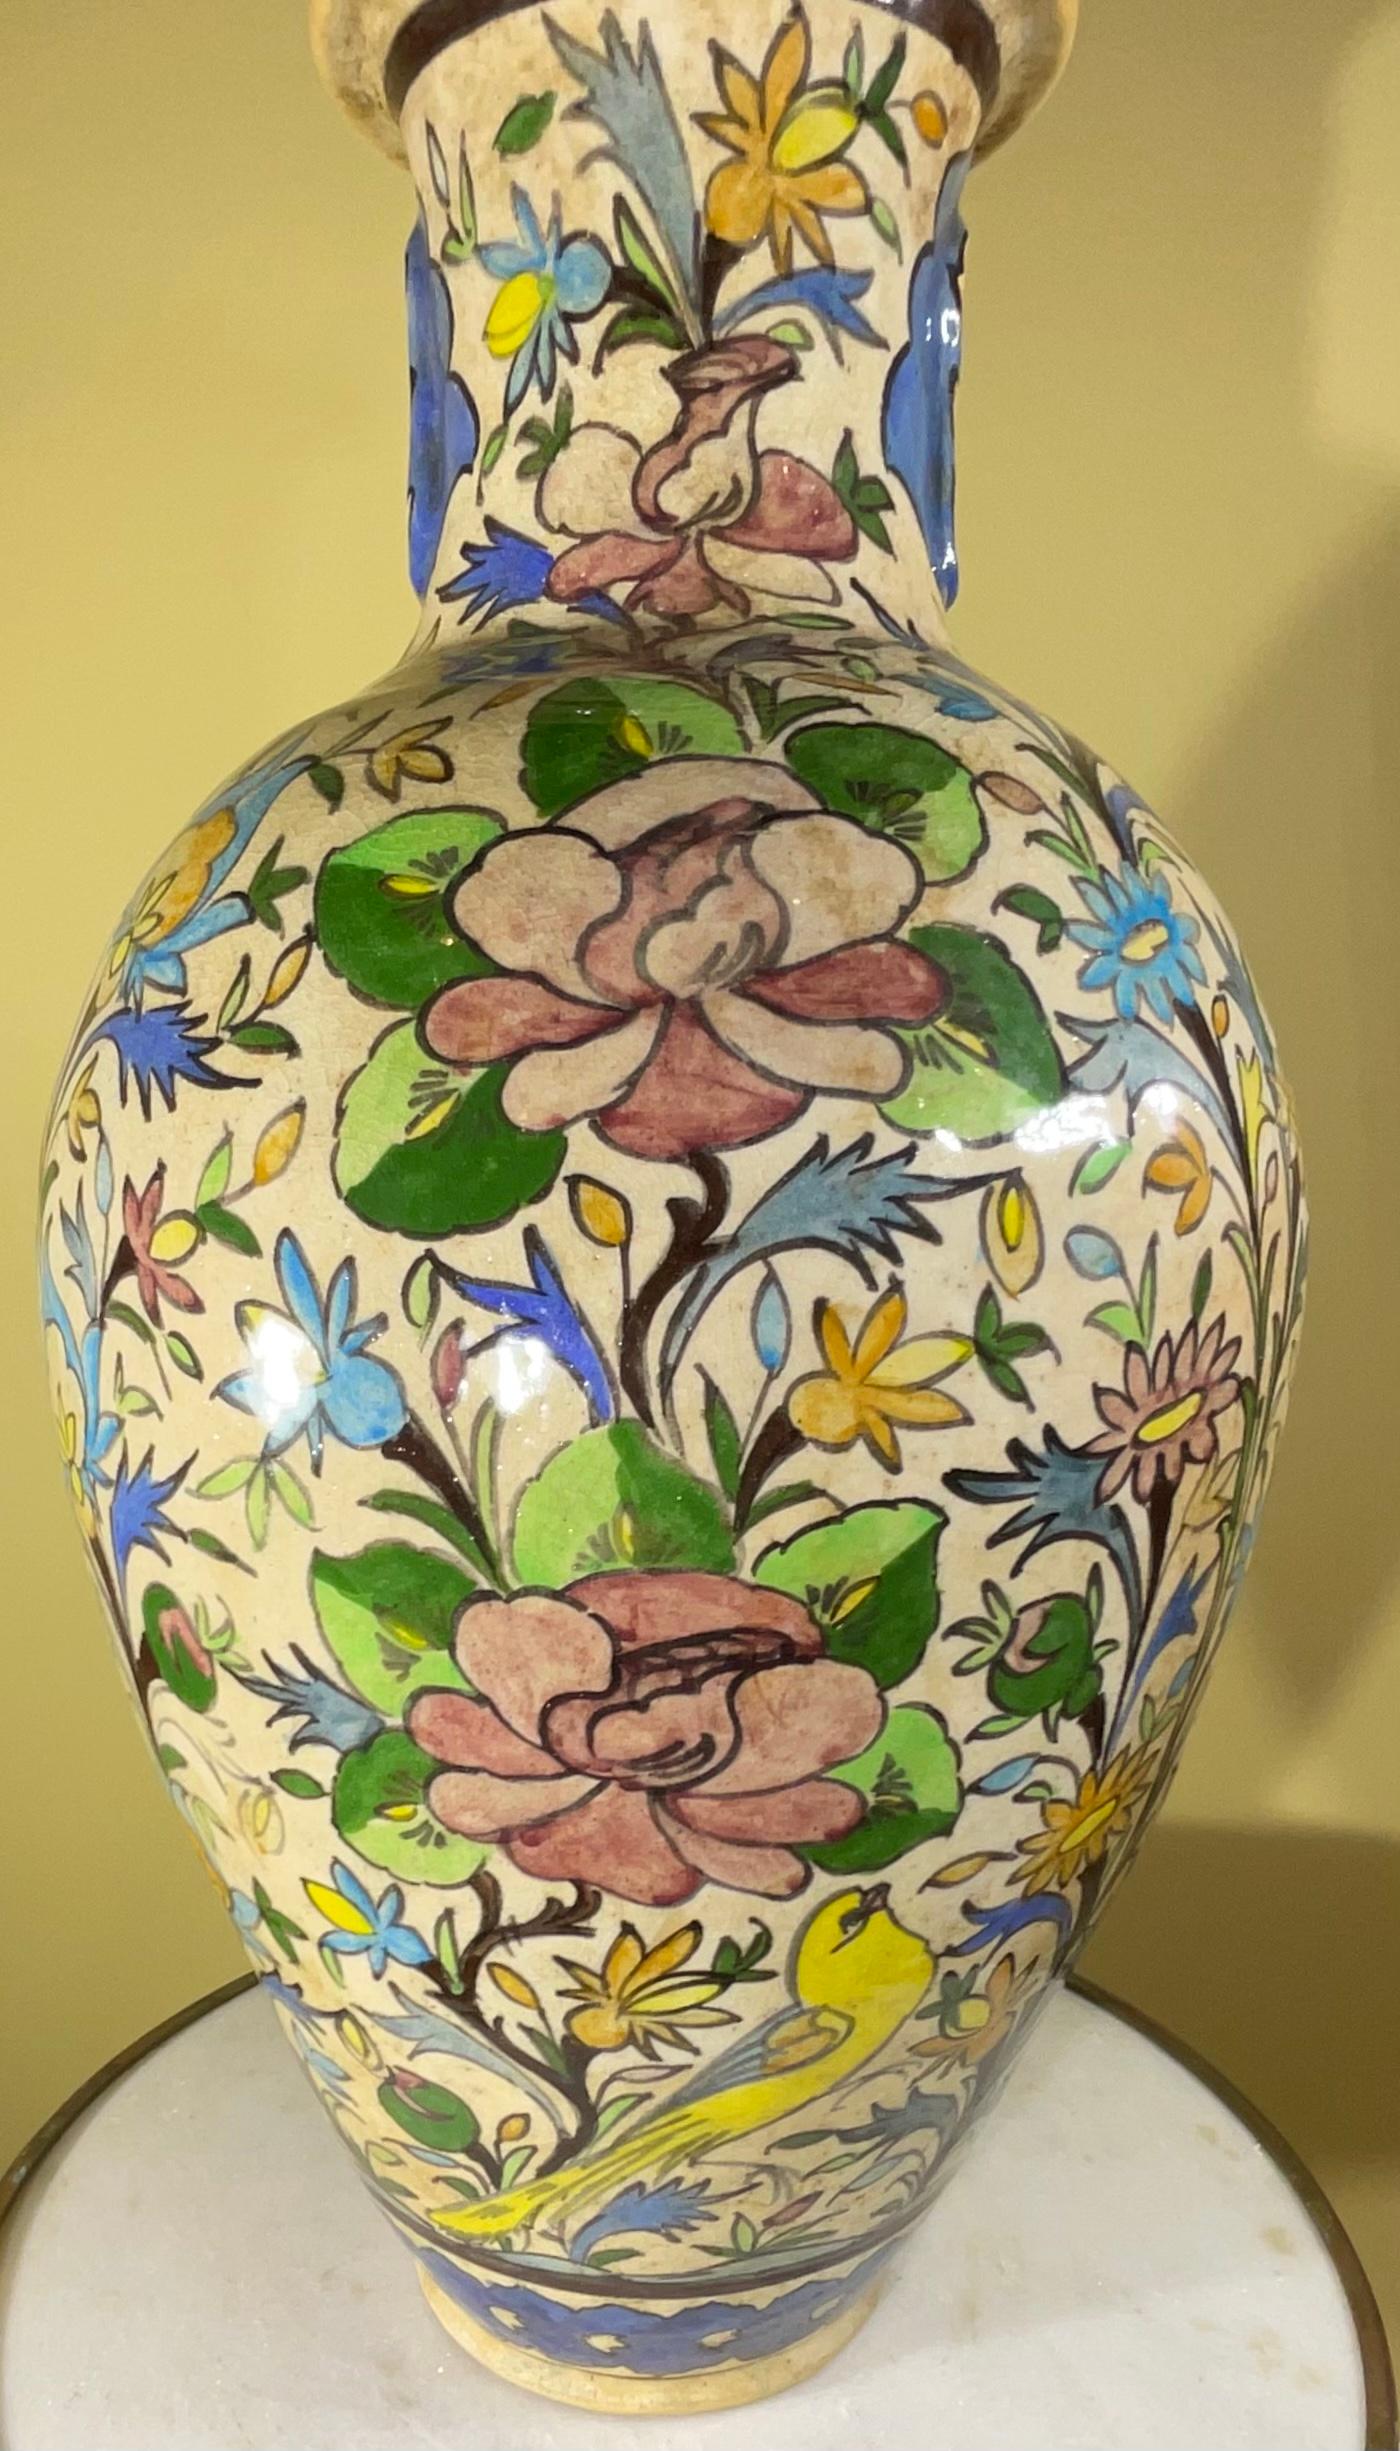 Magnifique vase vintage en céramique persane peint et émaillé à la main avec des motifs colorés d'oiseaux, d'arbres, de fleurs et de vignes sur fond crème.
 Un grand objet d'art à exposer.